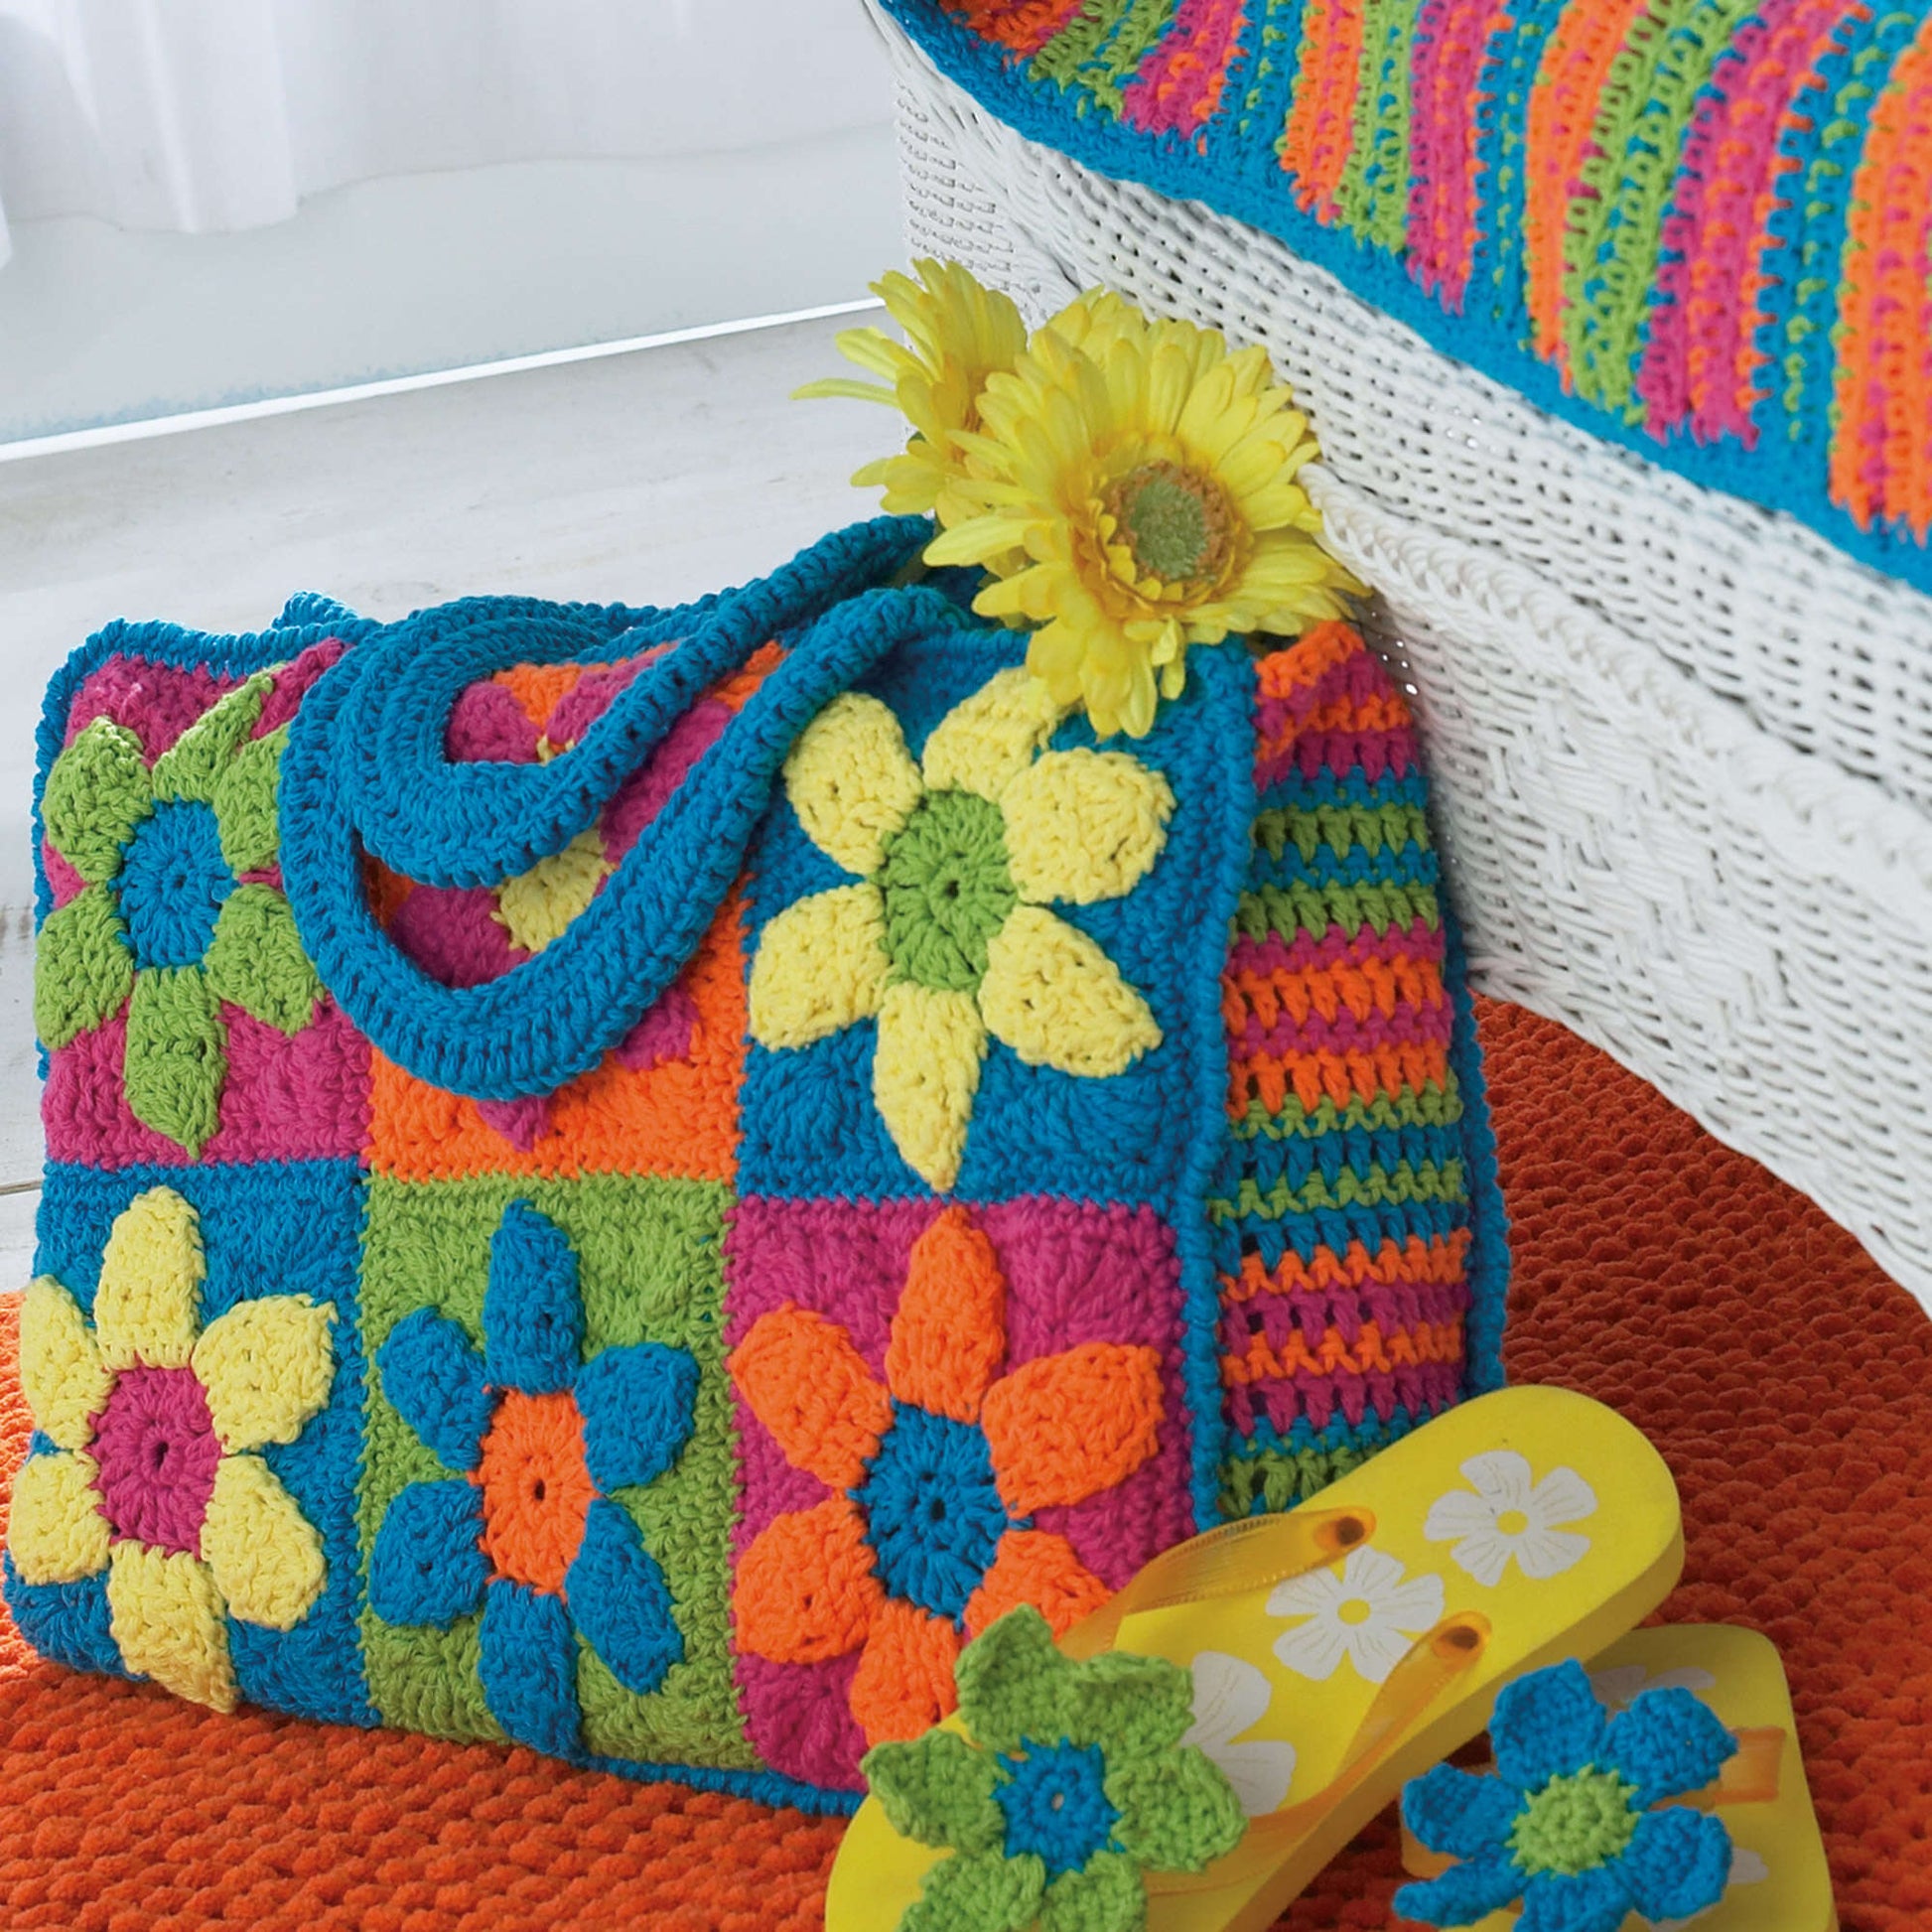 Bernat Flower Power Beach Bag Crochet Bag made in Bernat Handicrafter Cotton yarn